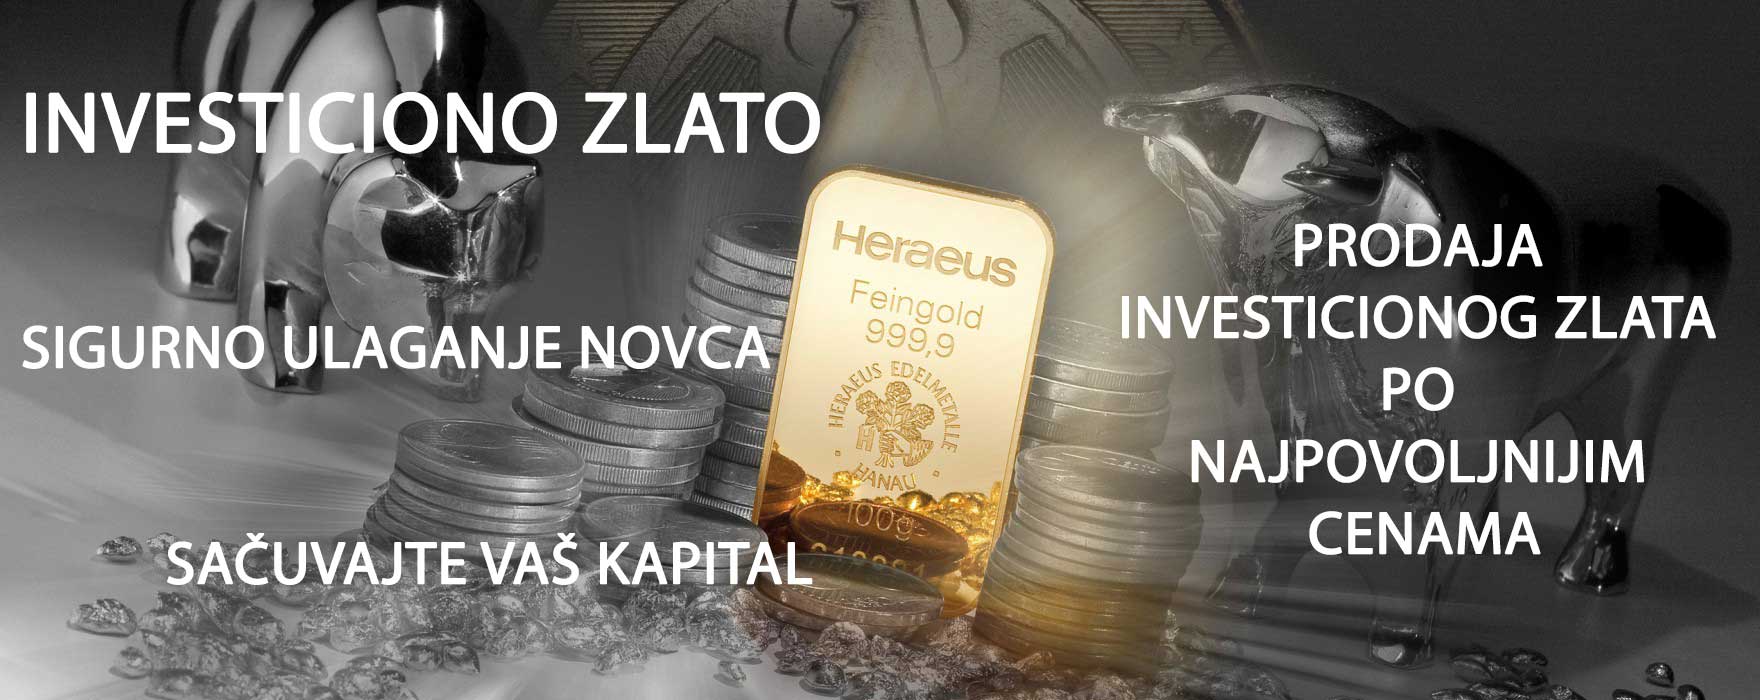 investiciono-zlato-sacuvajte-kapital-1170x355